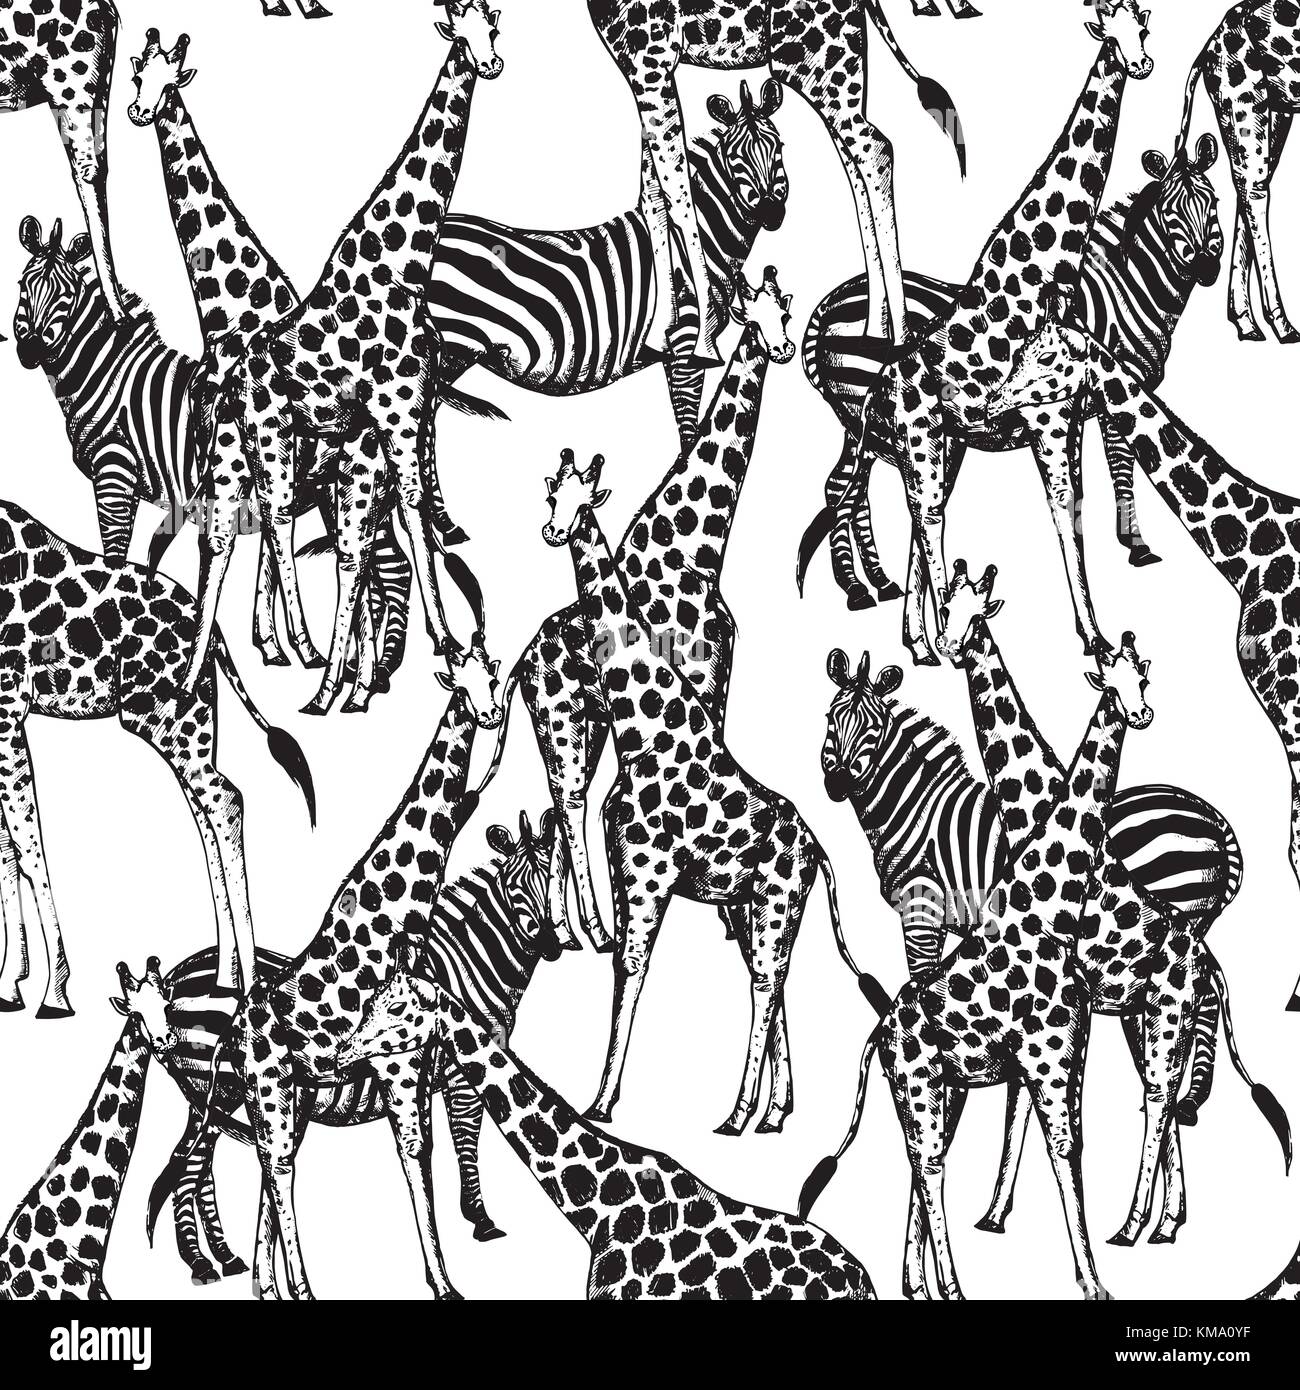 Die nahtlose Vektor Muster von Hand gezeichnete Skizze stil Giraffen und Zebras. Stock Vektor